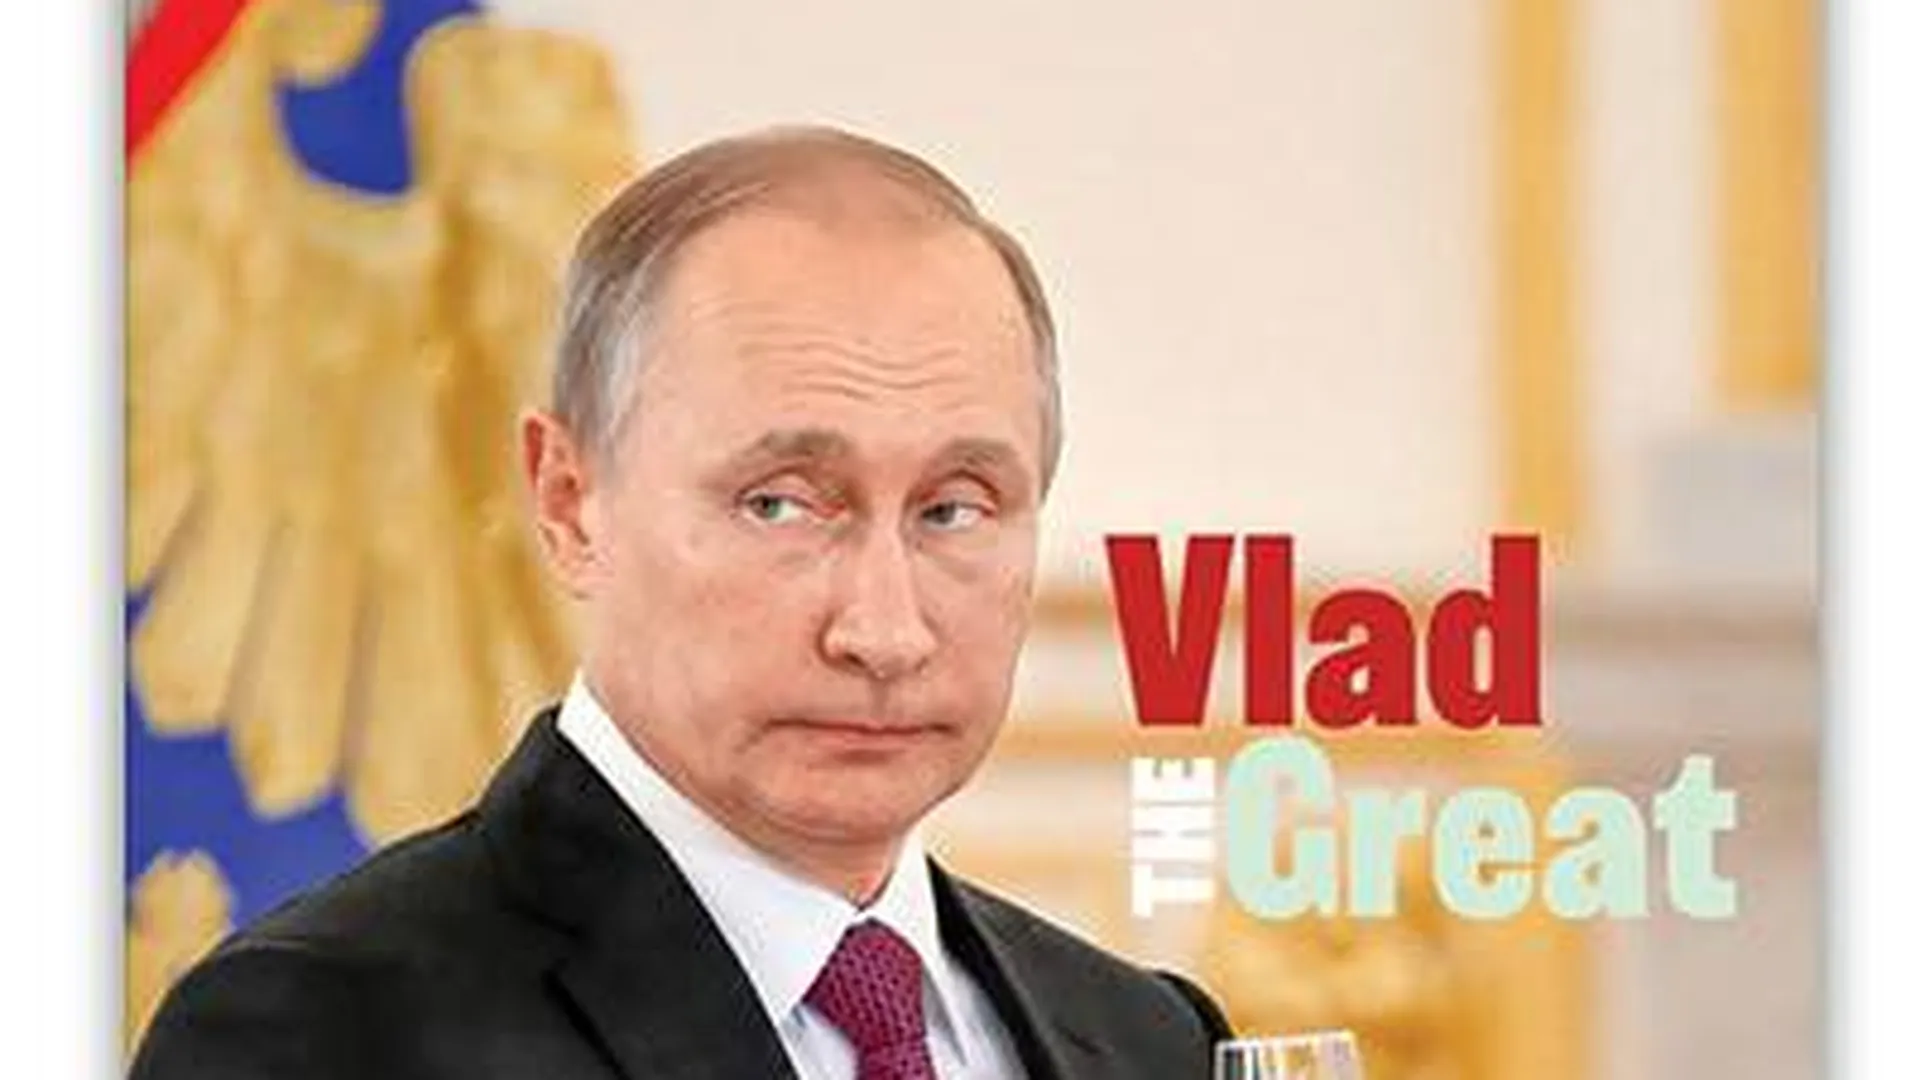 Американский журнал поместил на обложку Путина и назвал его Владом Великим